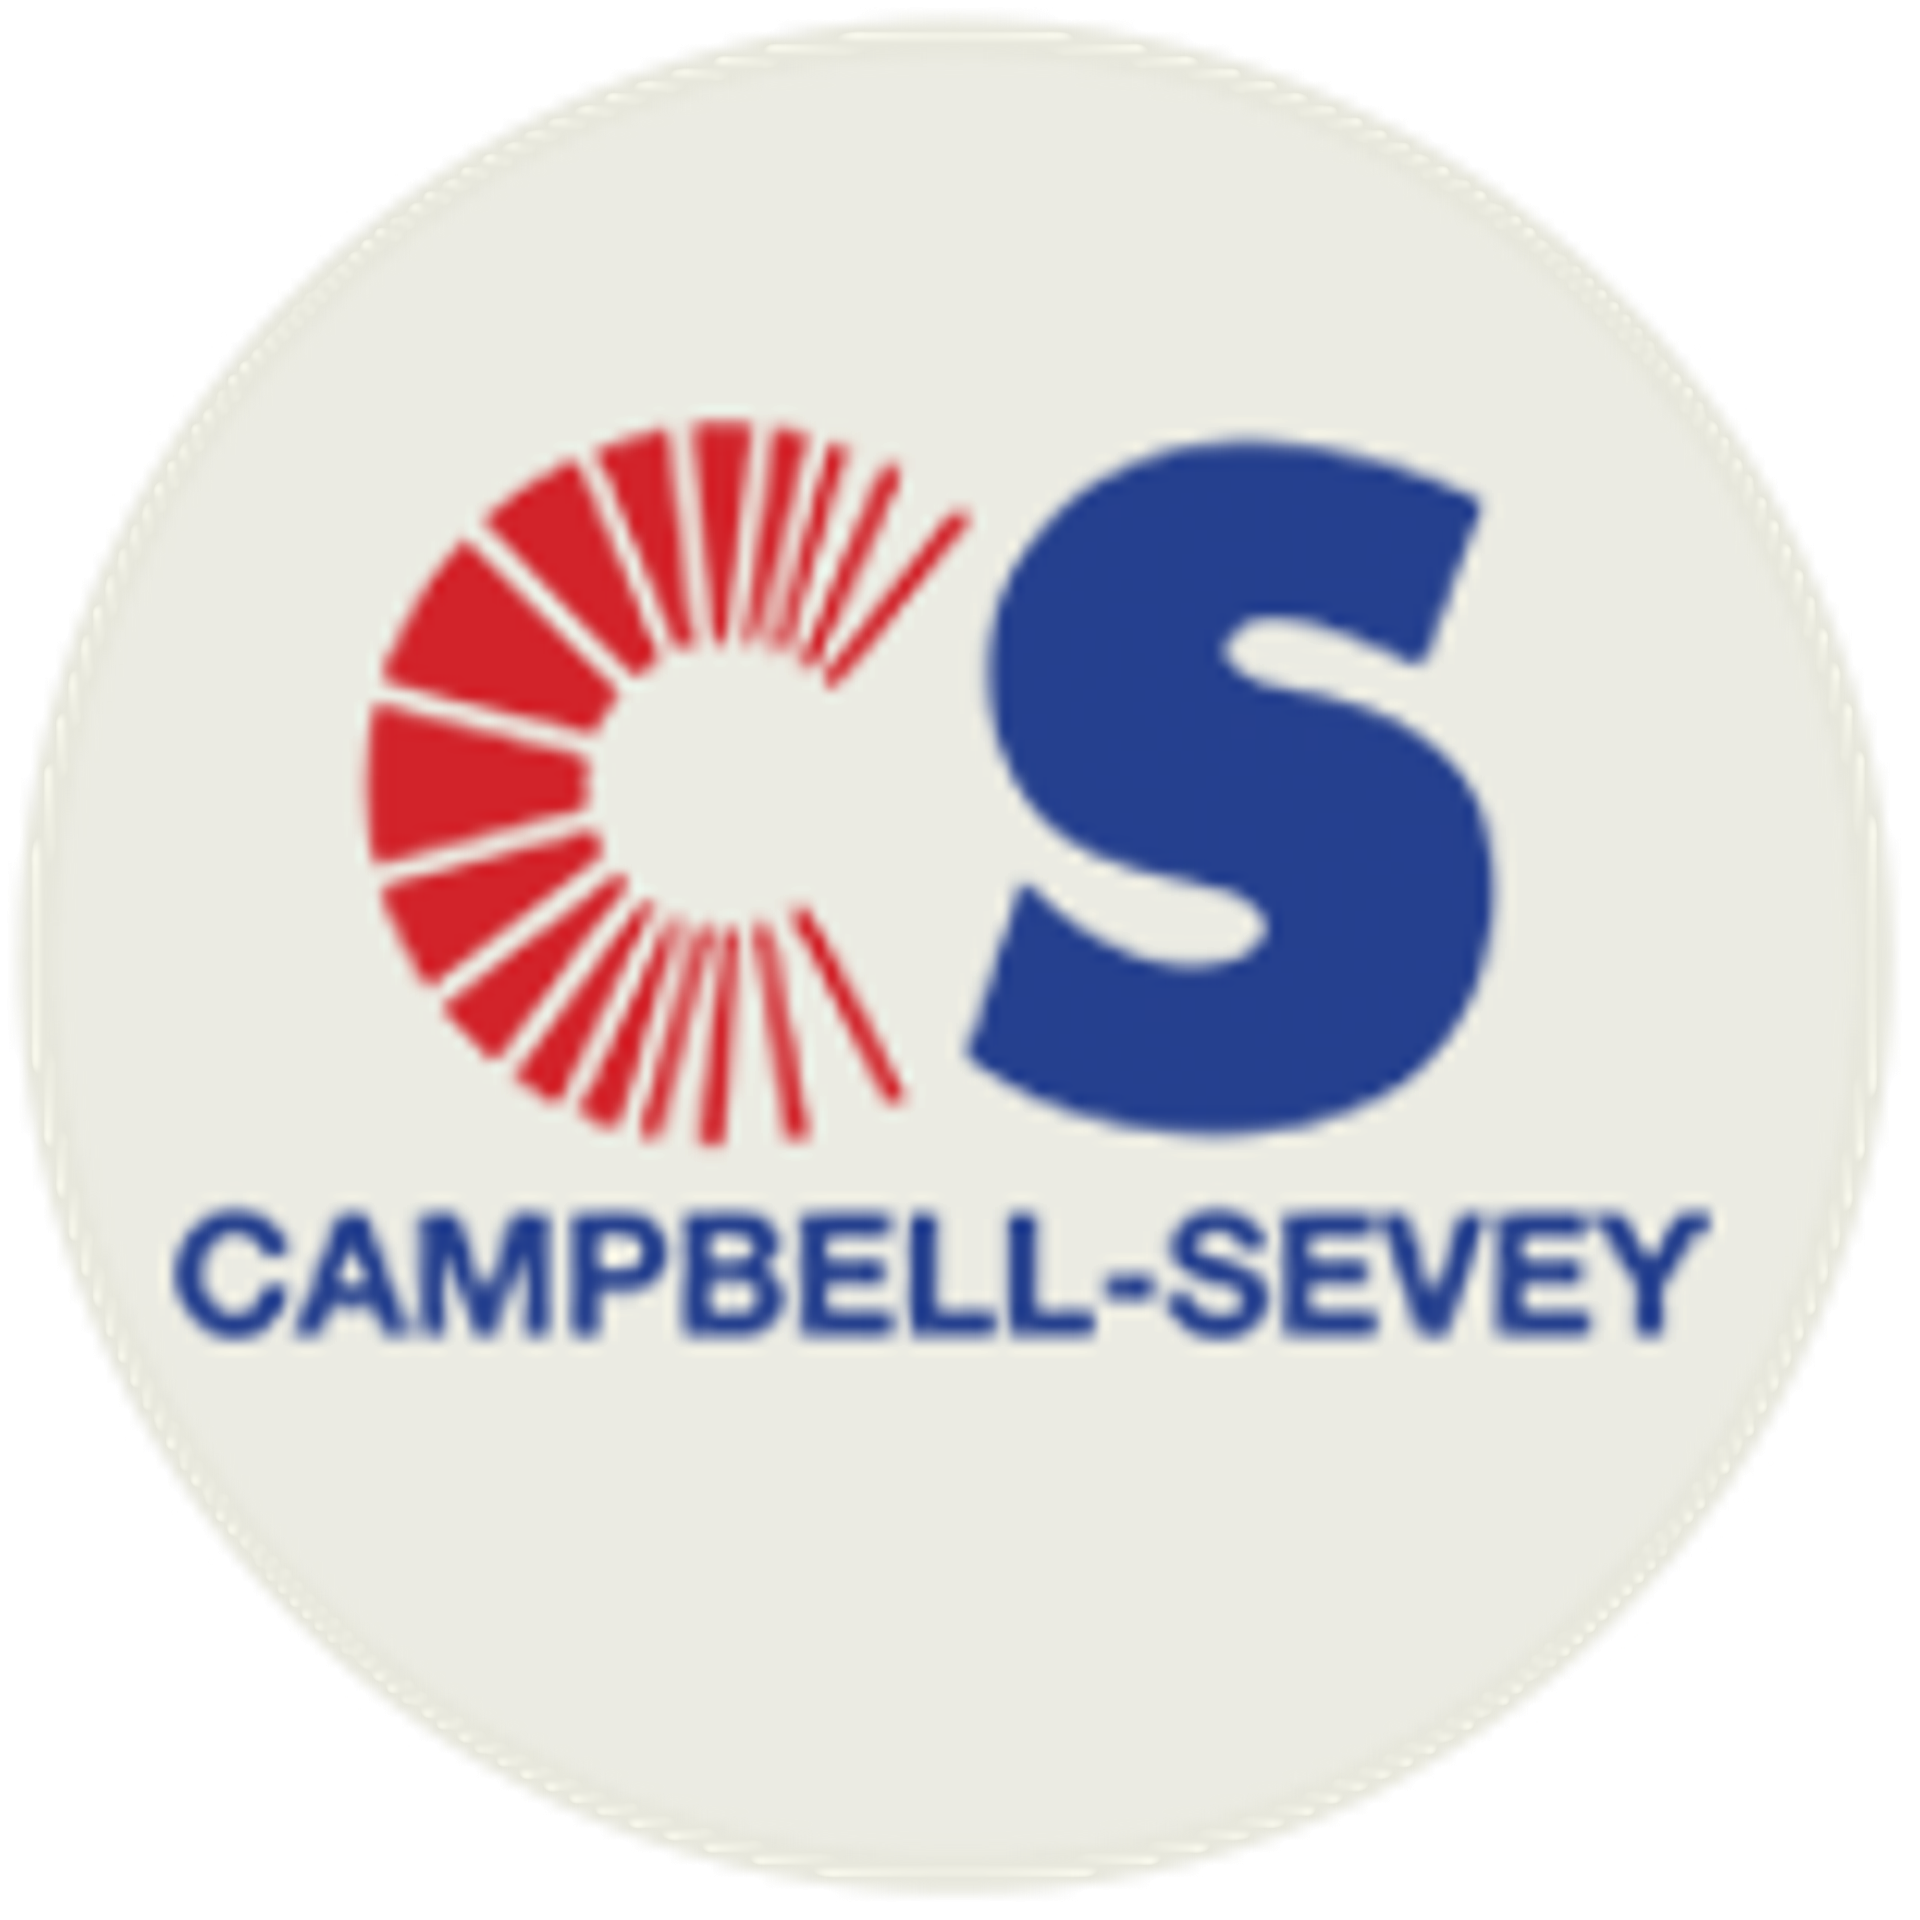 Campbell-Sevey